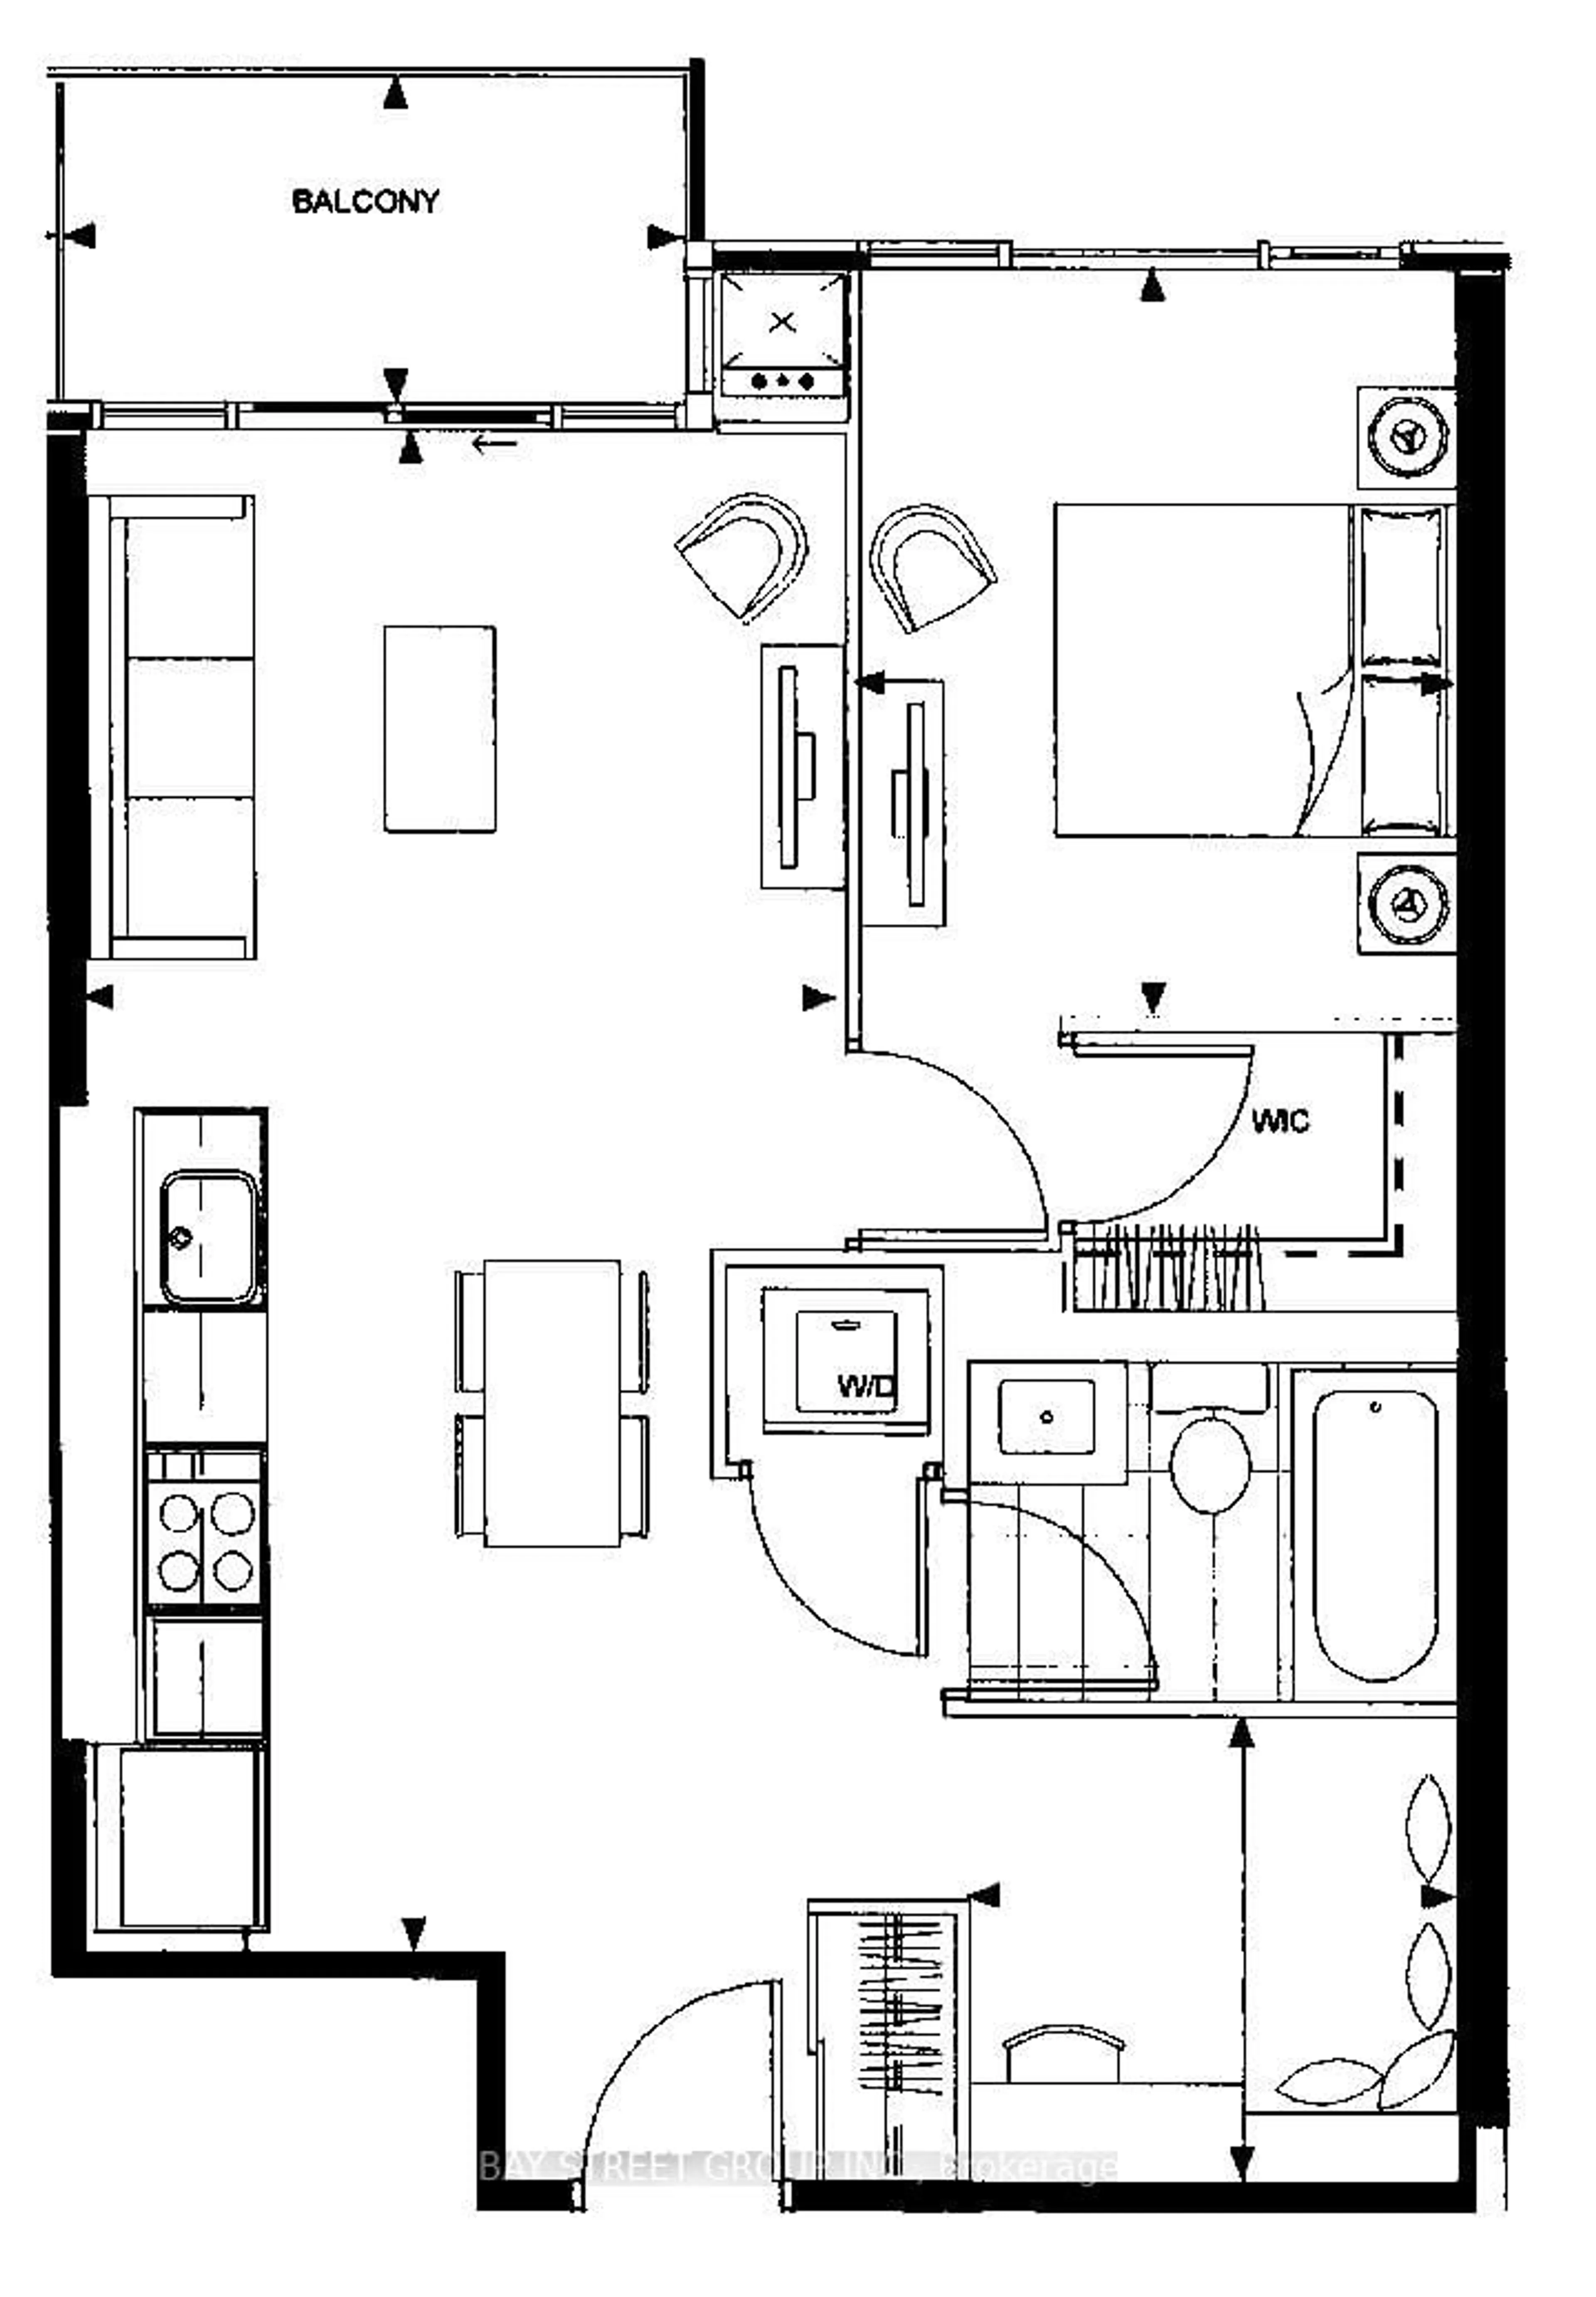 Floor plan for 525 Adelaide St #Ph11, Toronto Ontario M5V 1T6